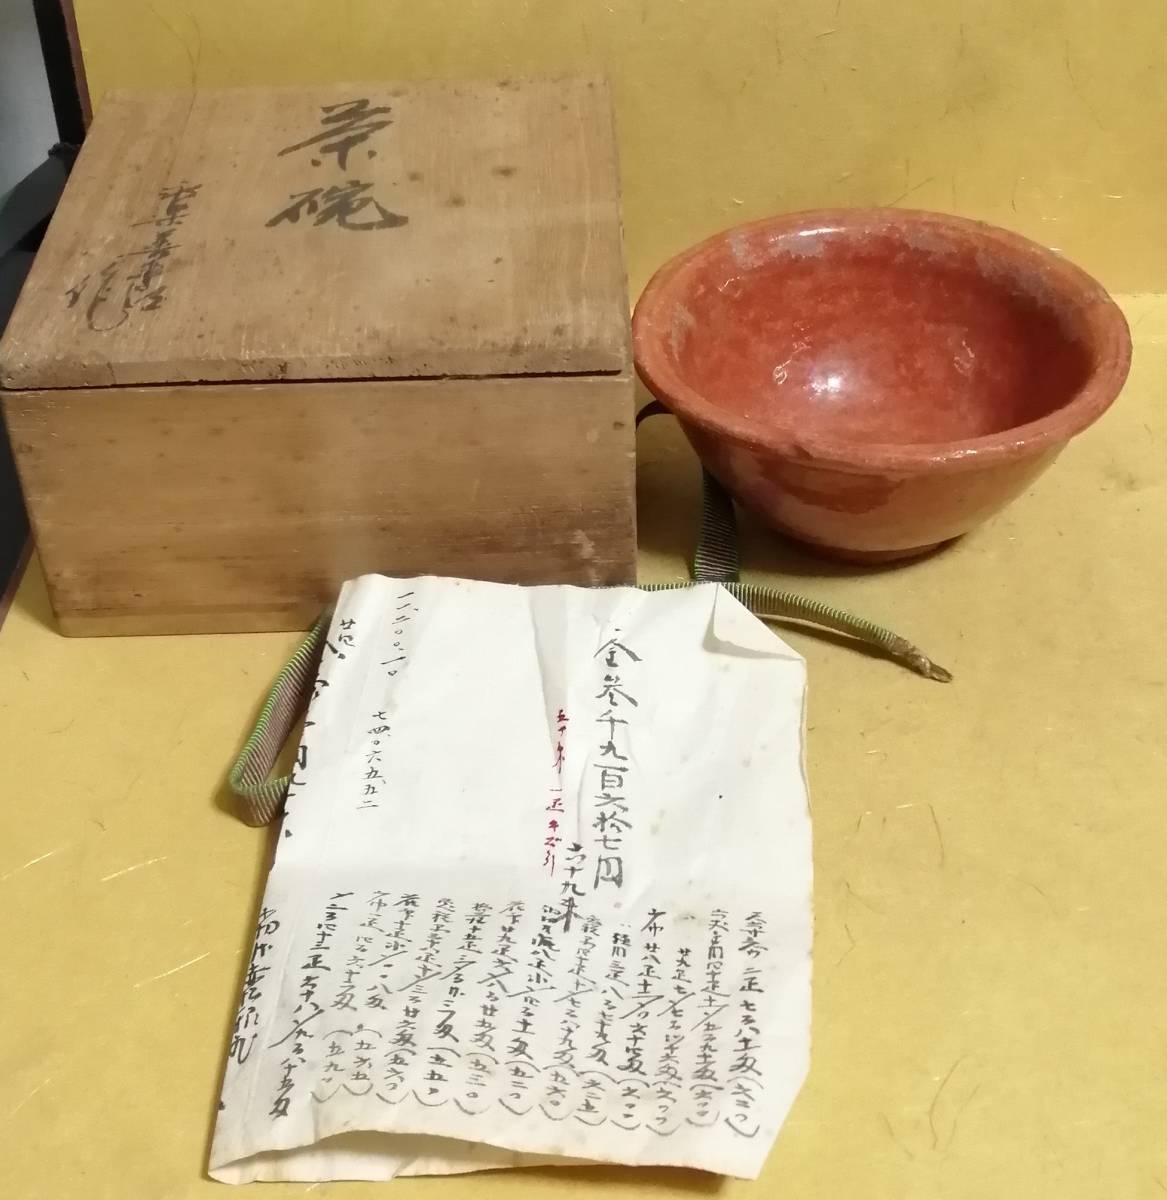 樂 吉左衛門 五代目 (1664年-1716年) 楽焼 茶碗 宗入 赤楽 箱 茶道具 楽焼 樂家 家元 裏千家 唐物 茶器 茶道具